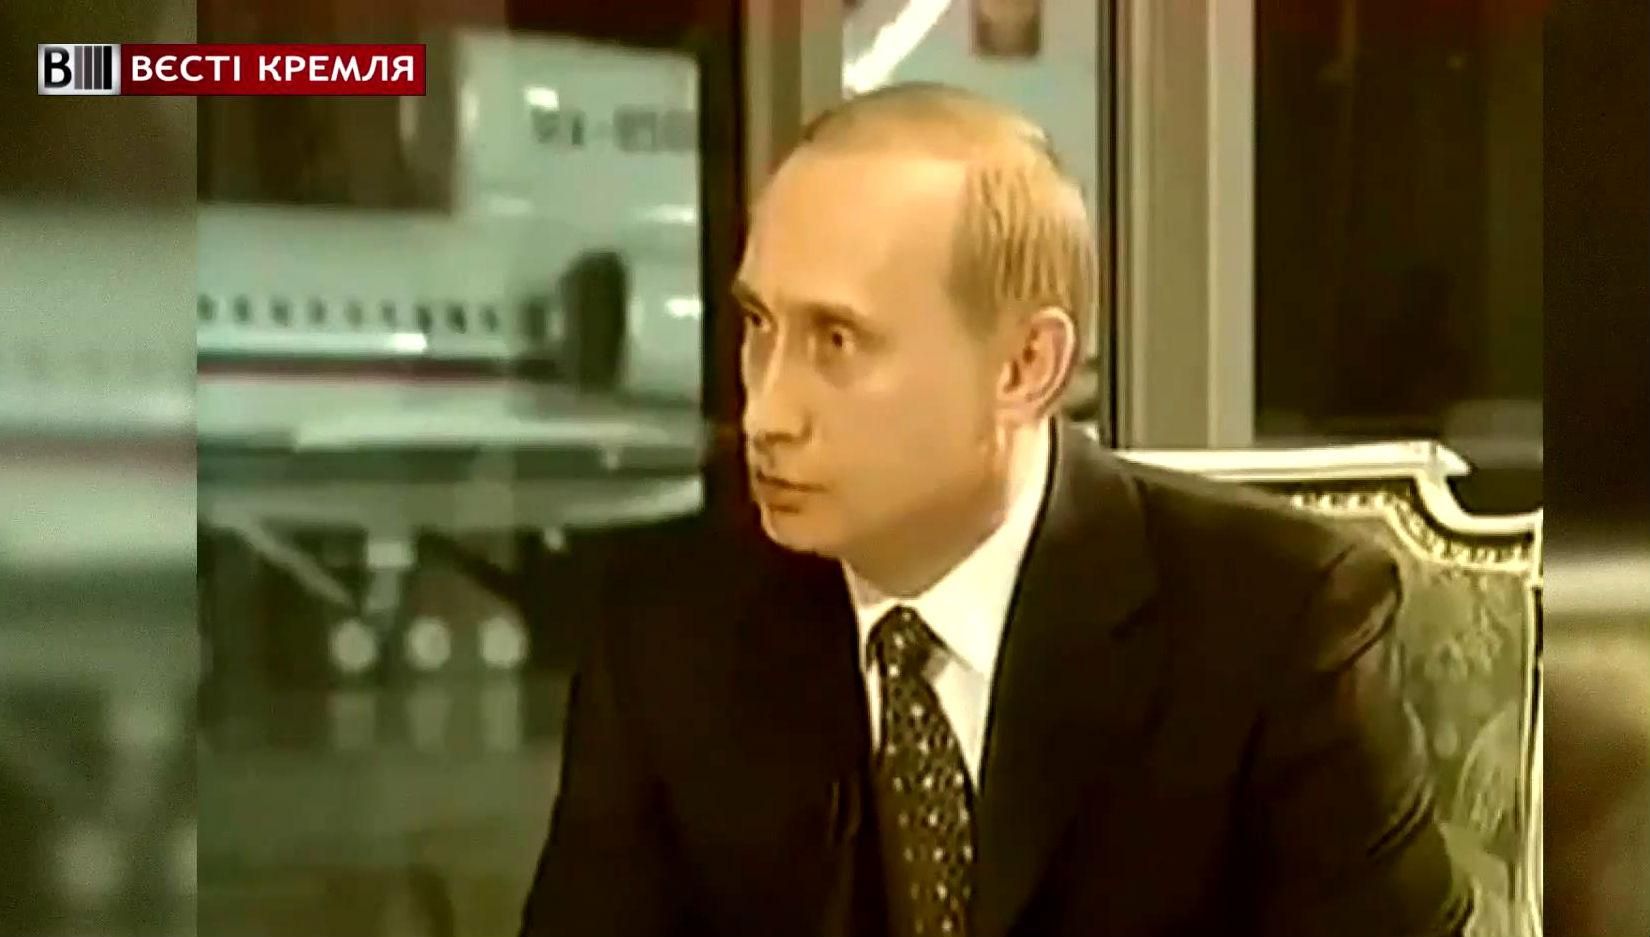 Какими были взгляды Путина 15 лет назад?